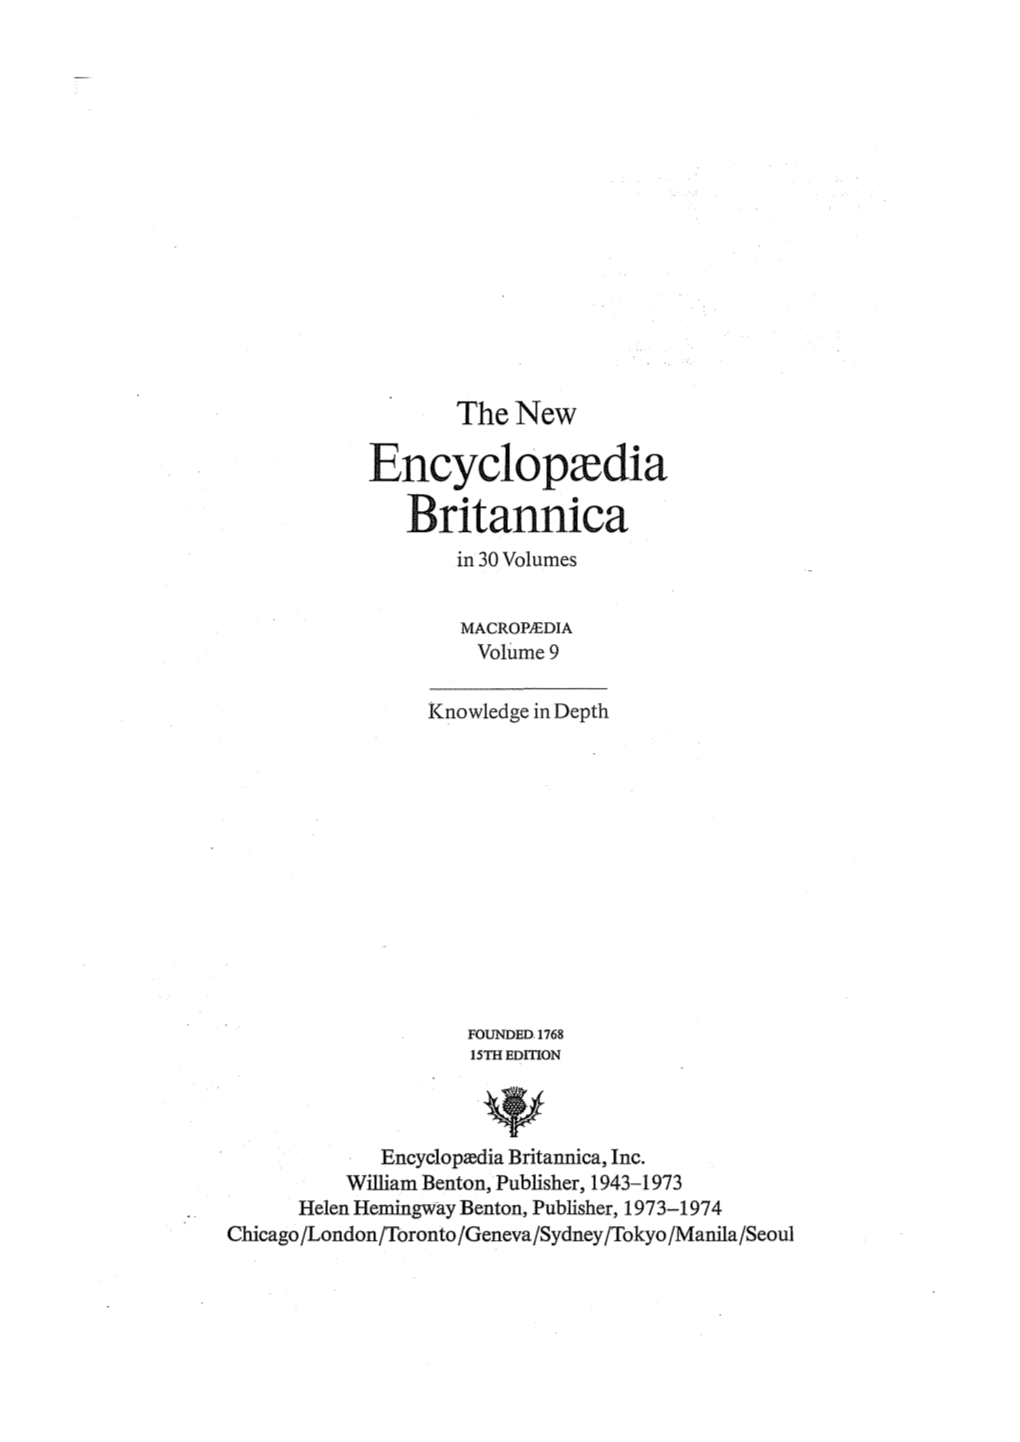 Encyclopcedia Britannica in 30 Volumes